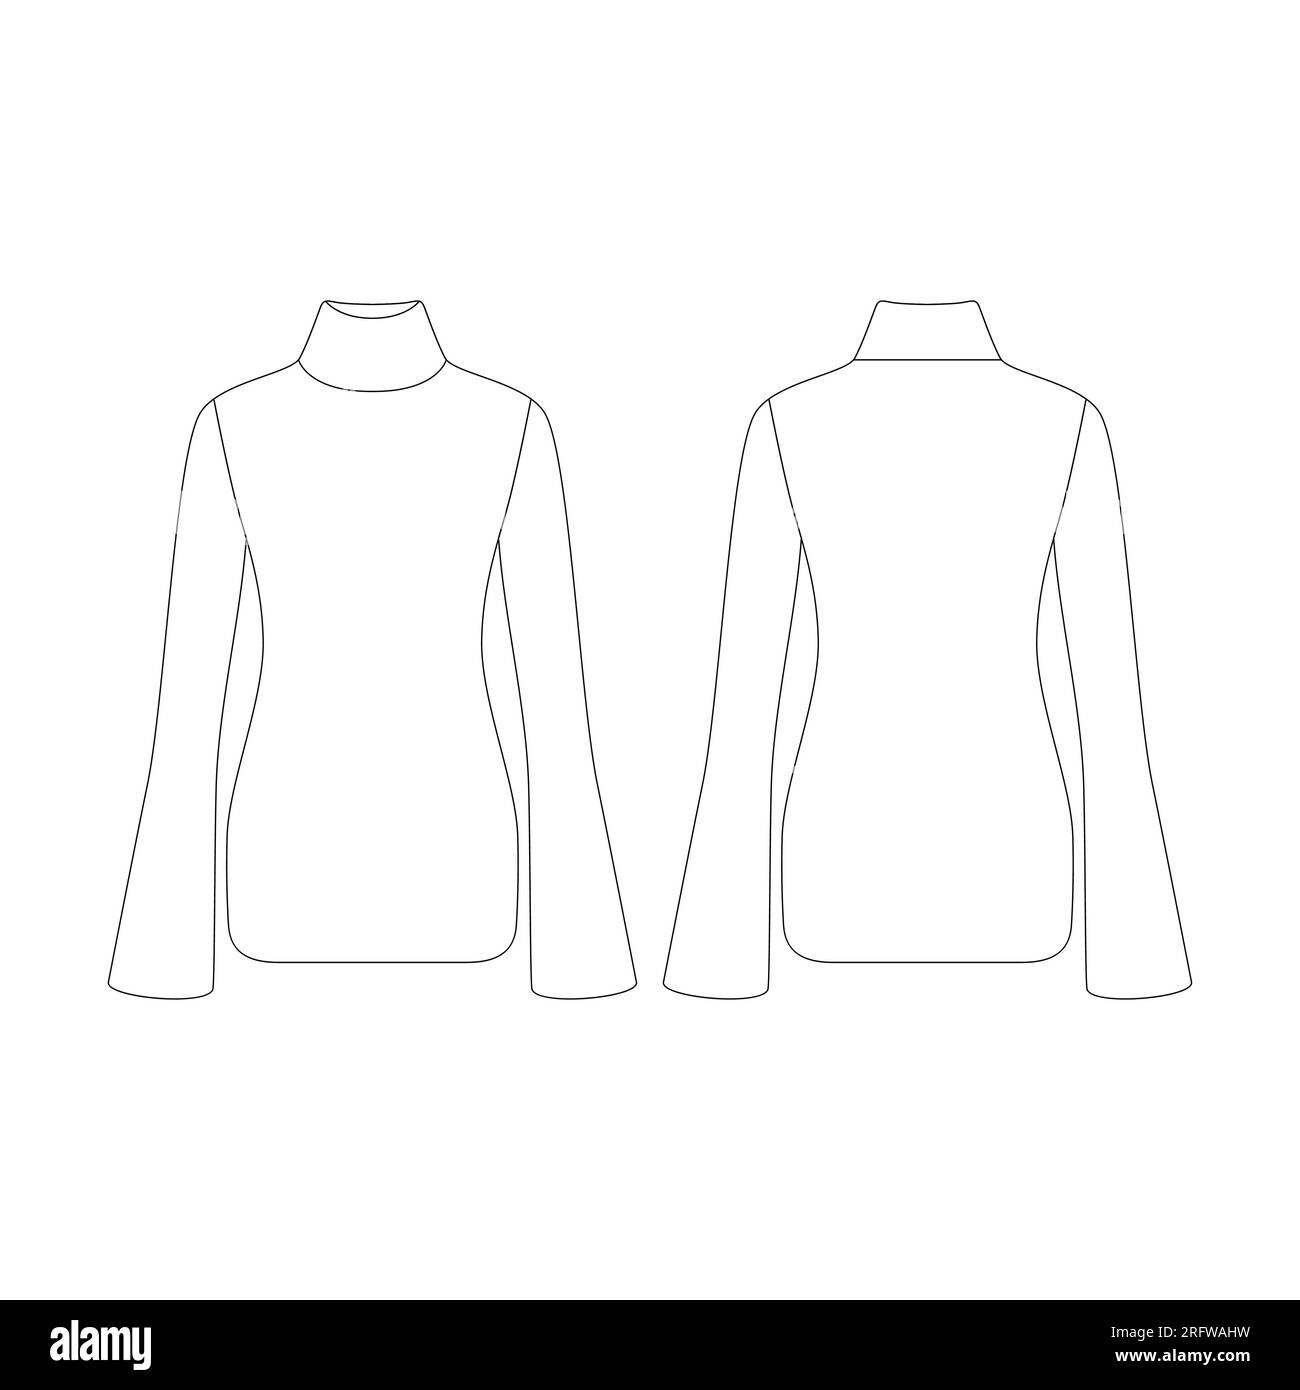 Vorlage Damen gerippter Pullover mit hohem Ausschnitt Vektorgrafik flaches Design Outline Bekleidungskollektion Oberbekleidung Stock Vektor